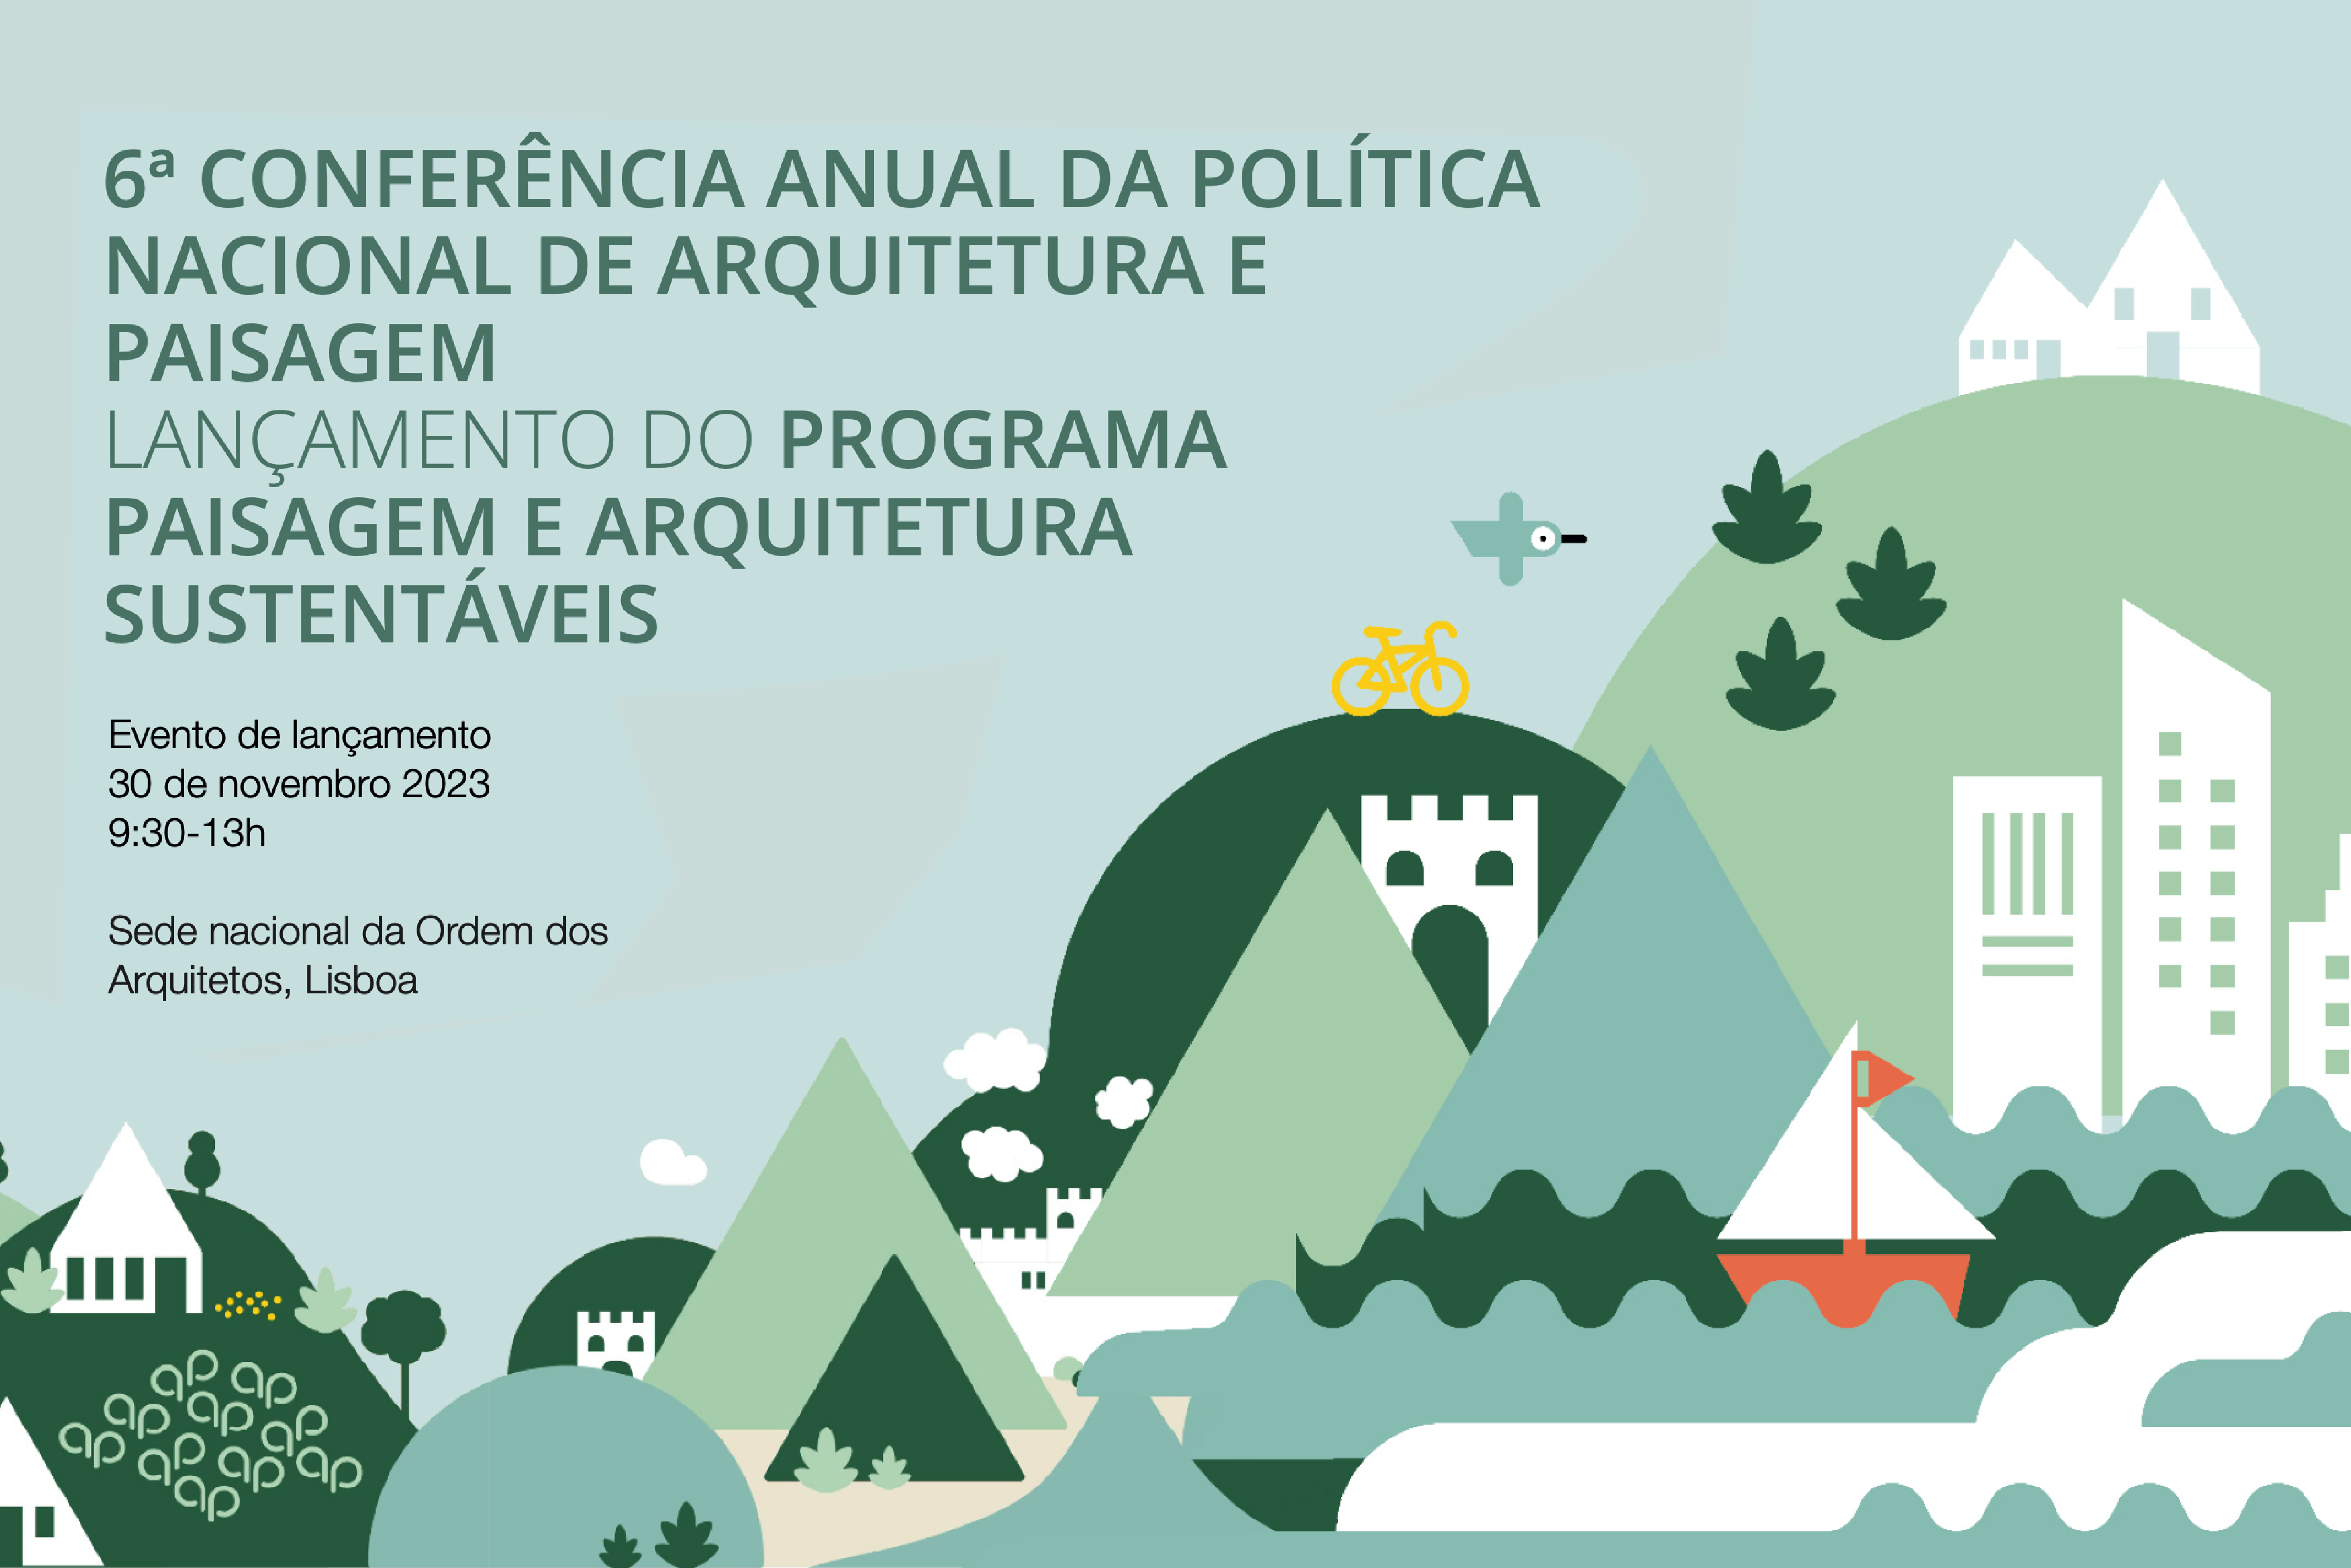 6ª Conferência Anual da Política Nacional de Arquitetura e Paisagem, dia 30 de novembro, das 9h30 às 13h00, na Sede Nacional da Ordem dos Arquitetos